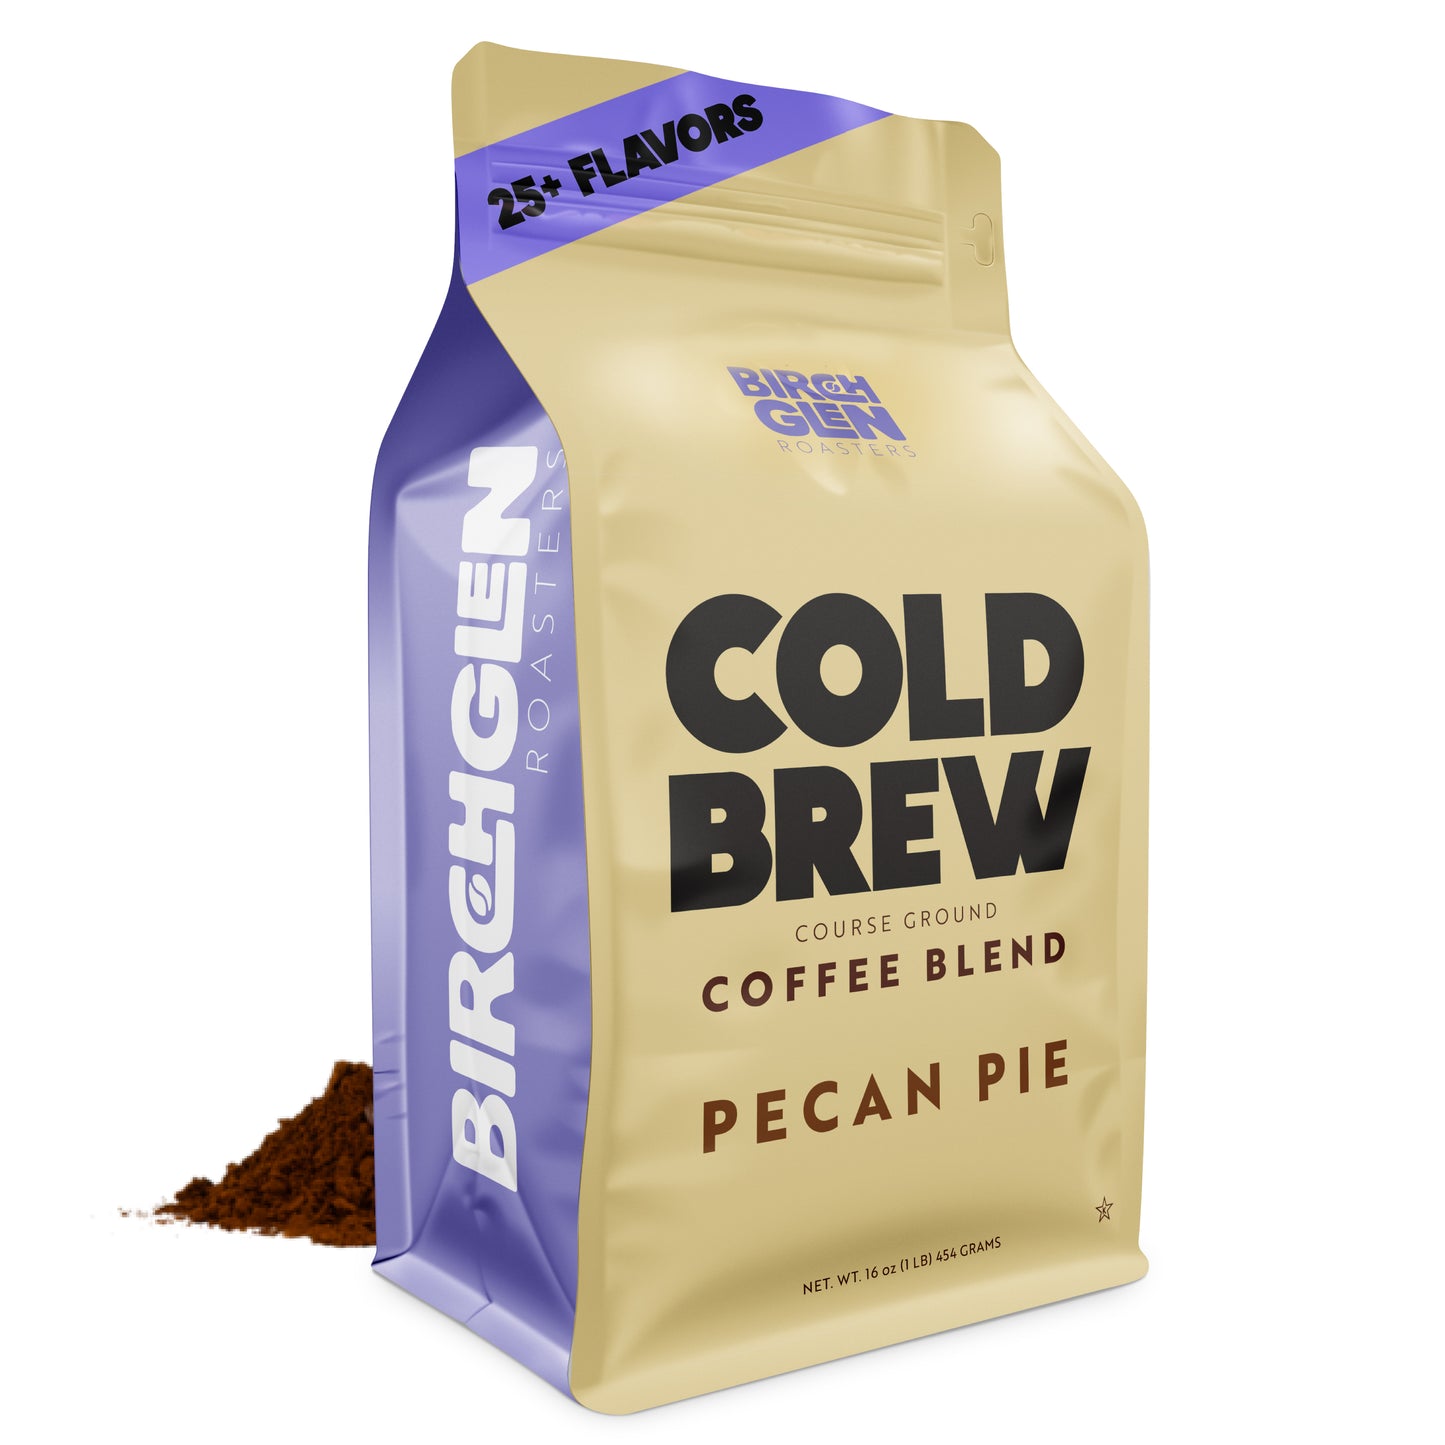 Birch Glen Roasters Cold Brew - Pecan Pie